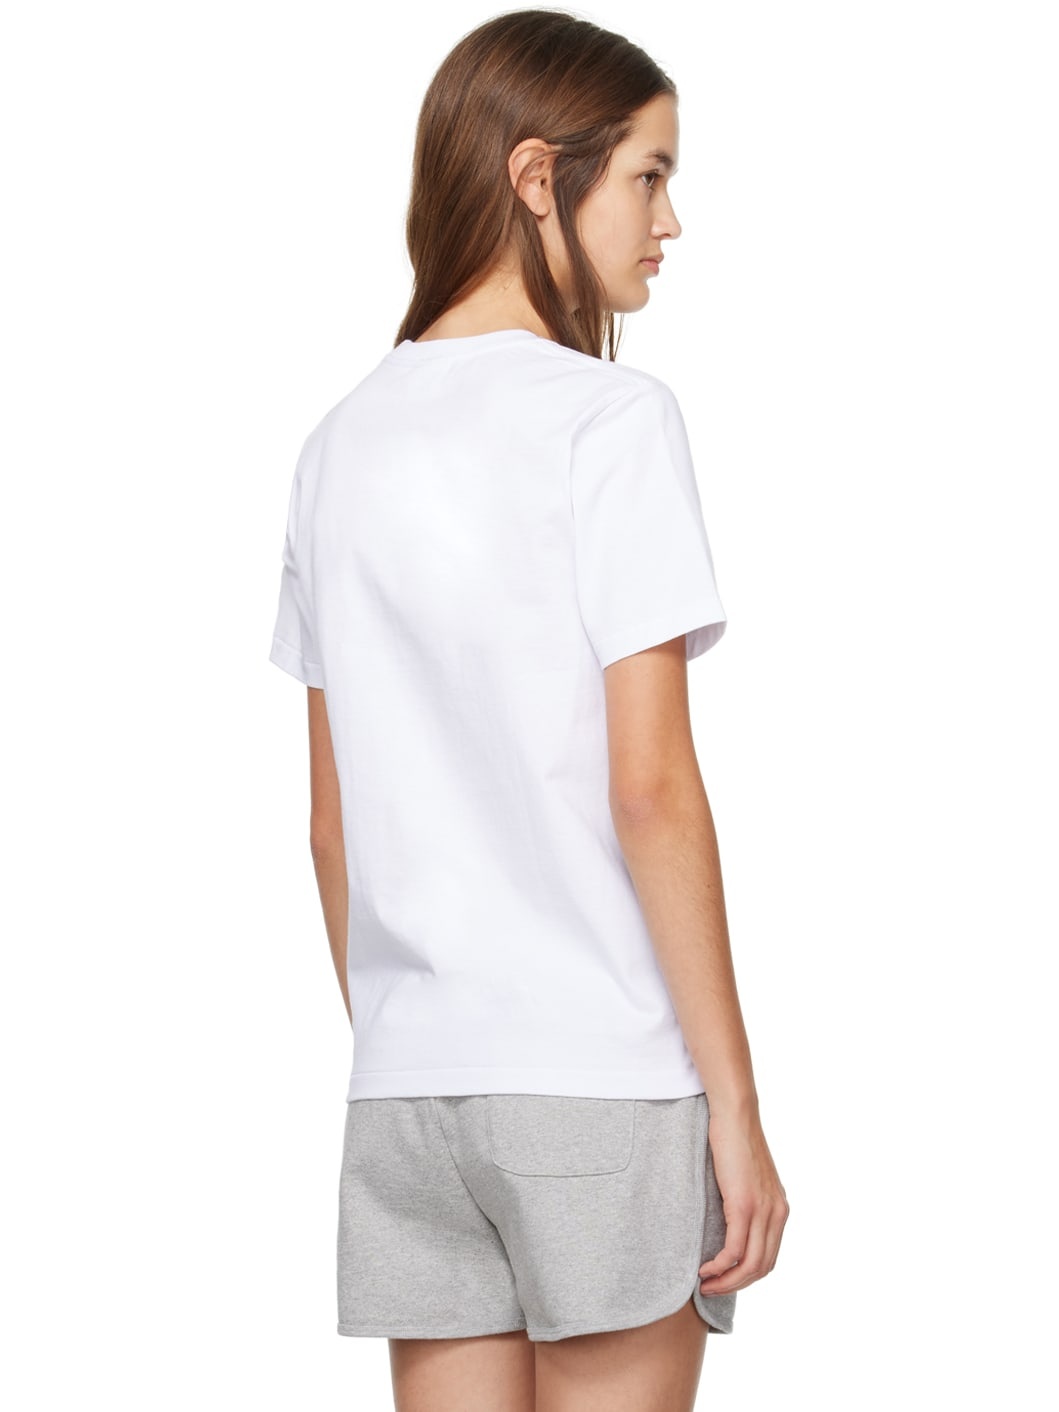 White Graffiti T-Shirt - 3